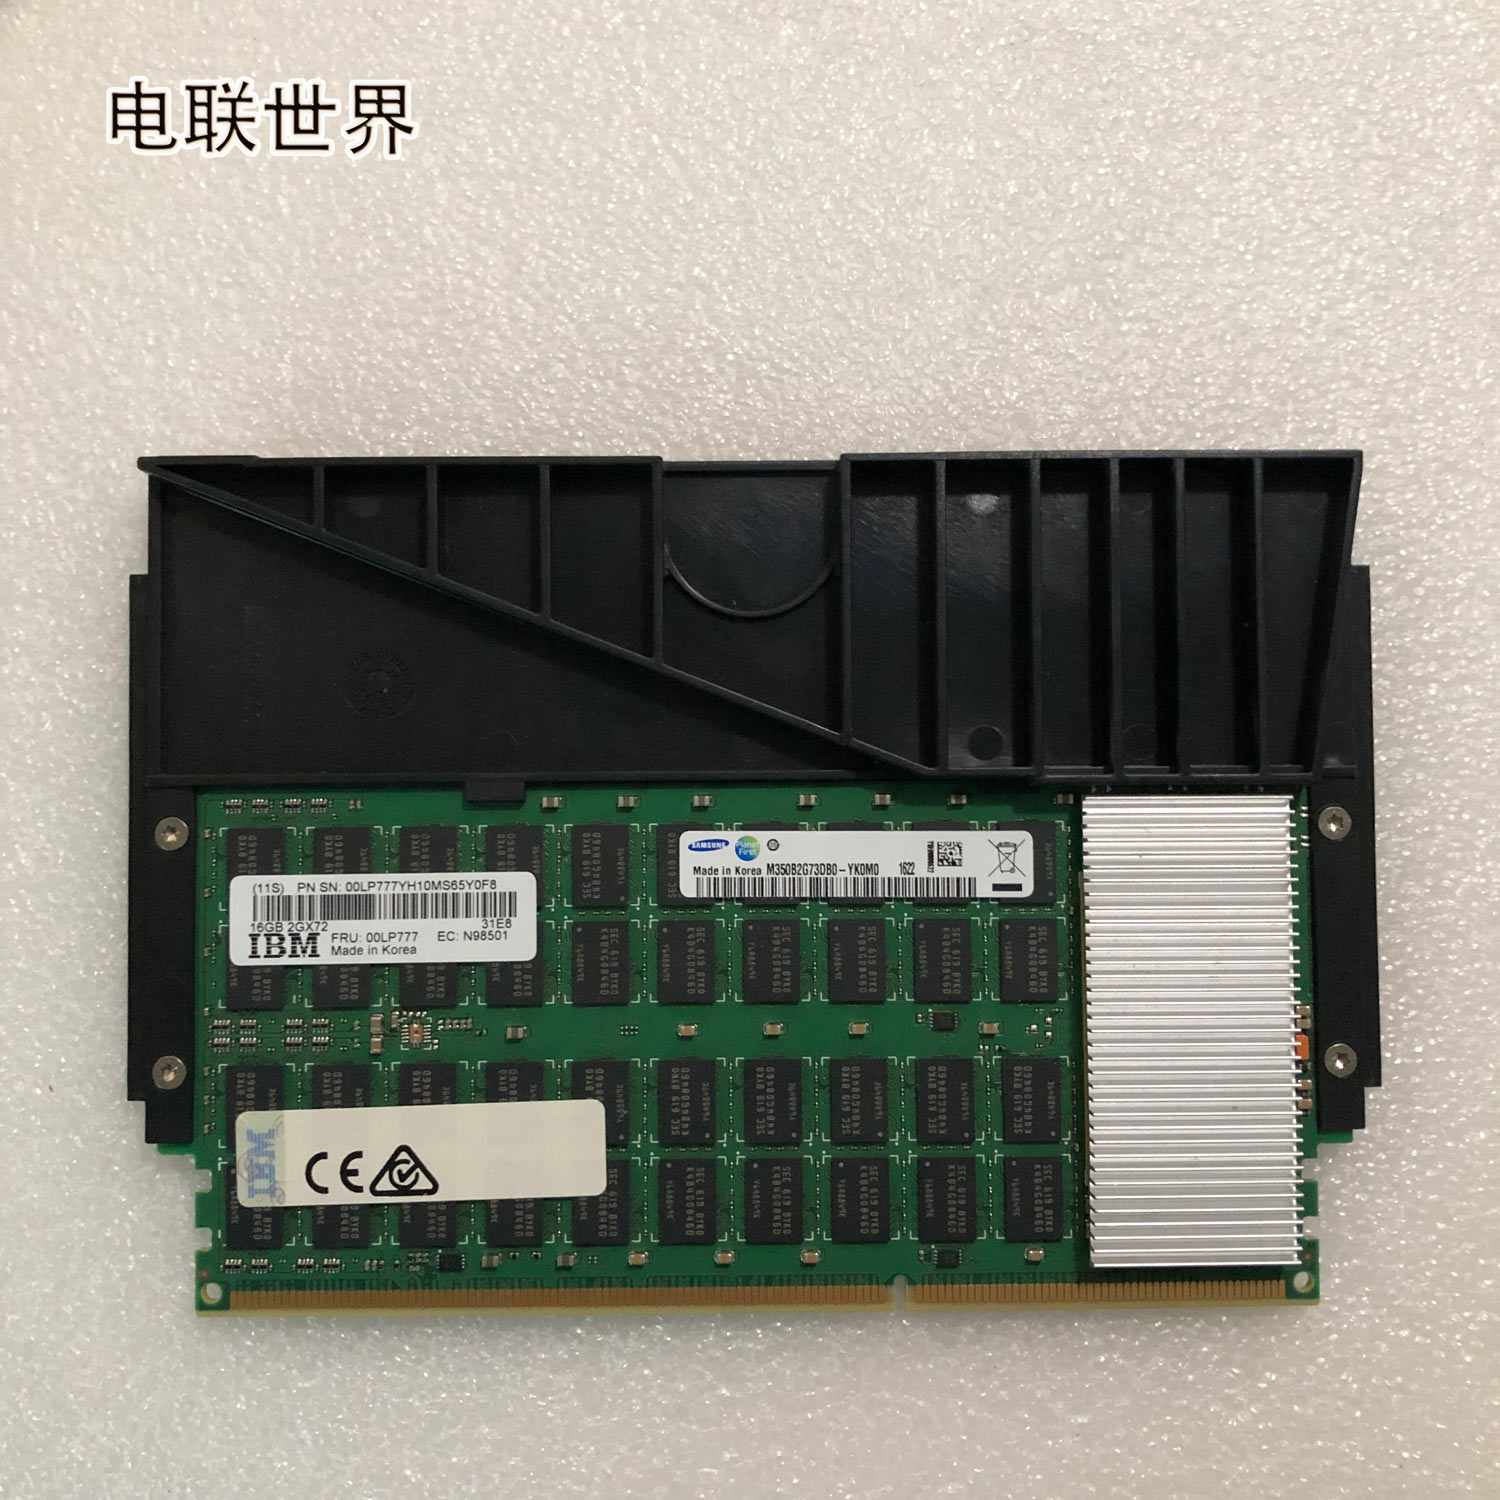 DDR3 内存条：虽已过时但仍在生产，曾经的辉煌与现在的市场状况